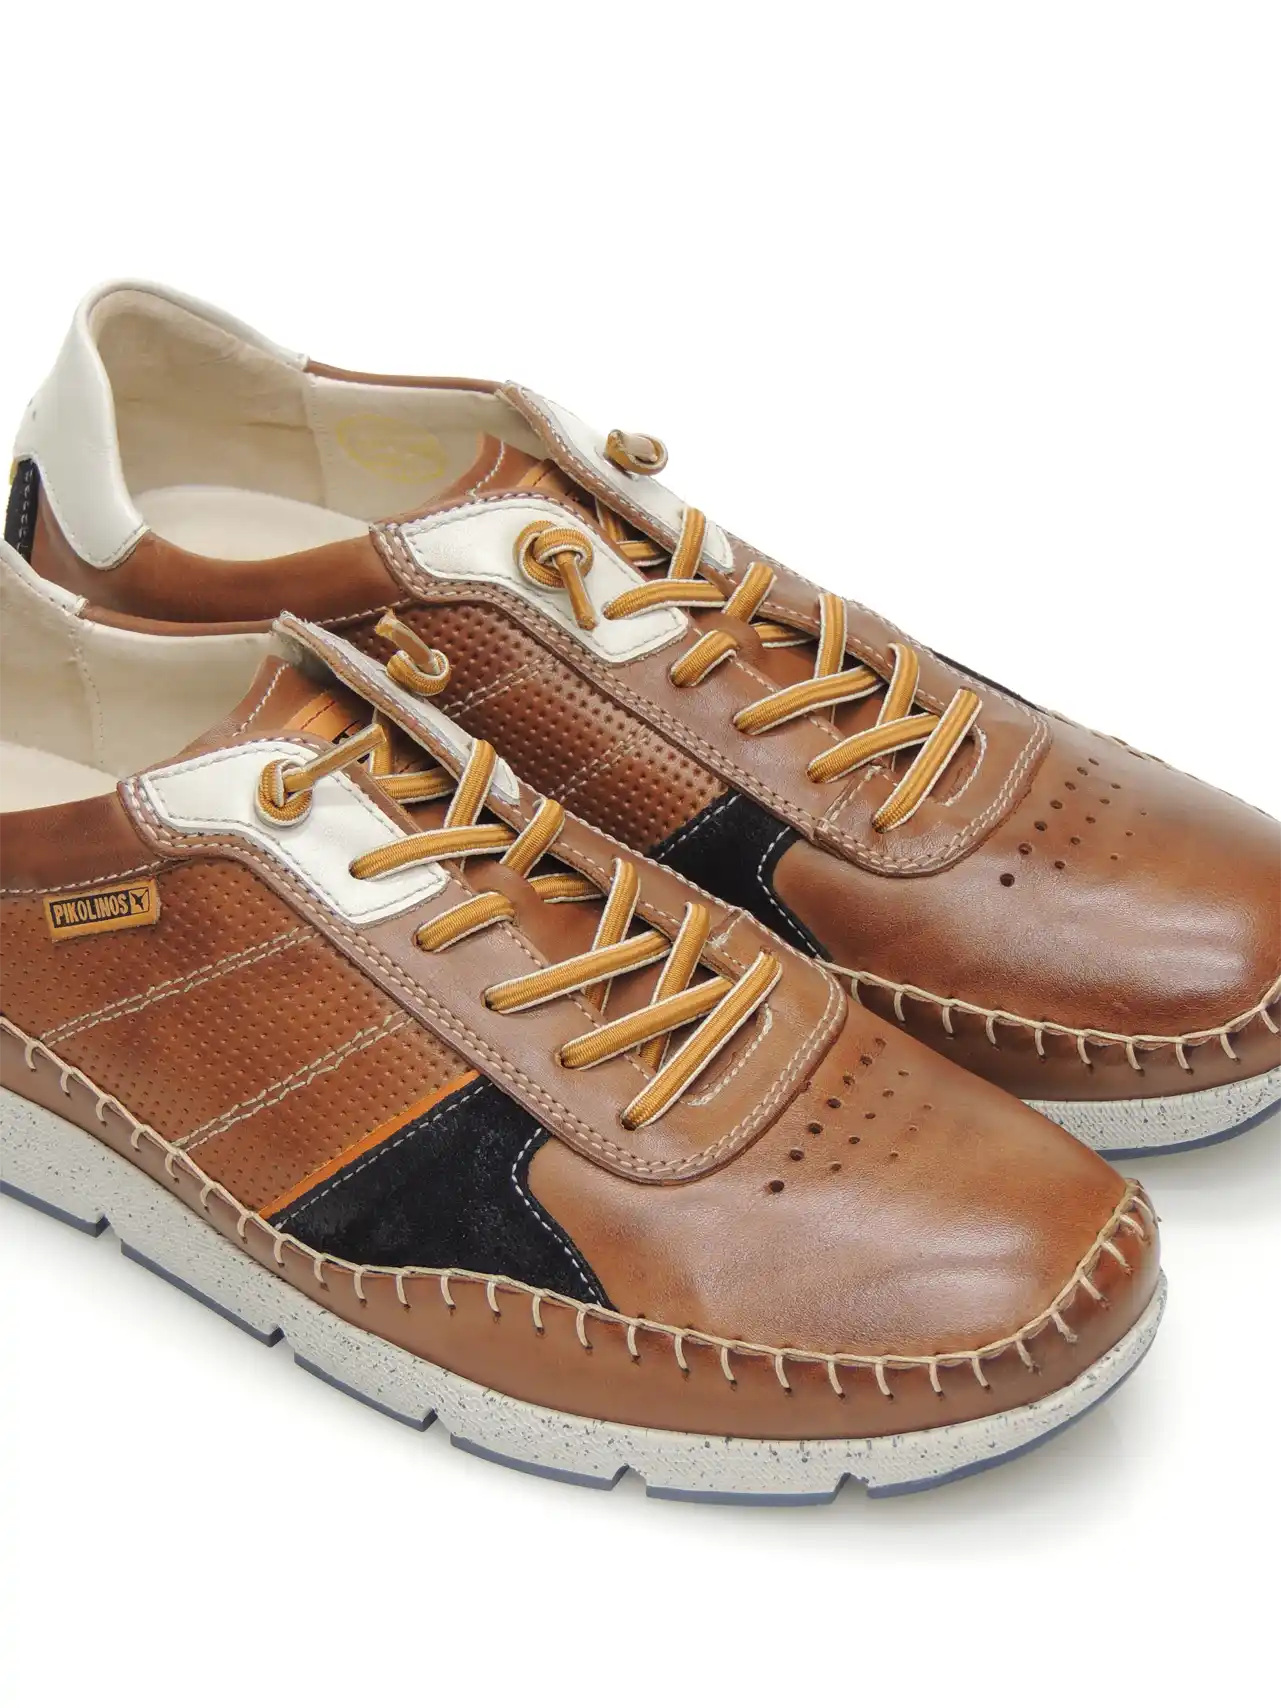 sneakers--pikolinos-m4u-6113c1-piel-cuero